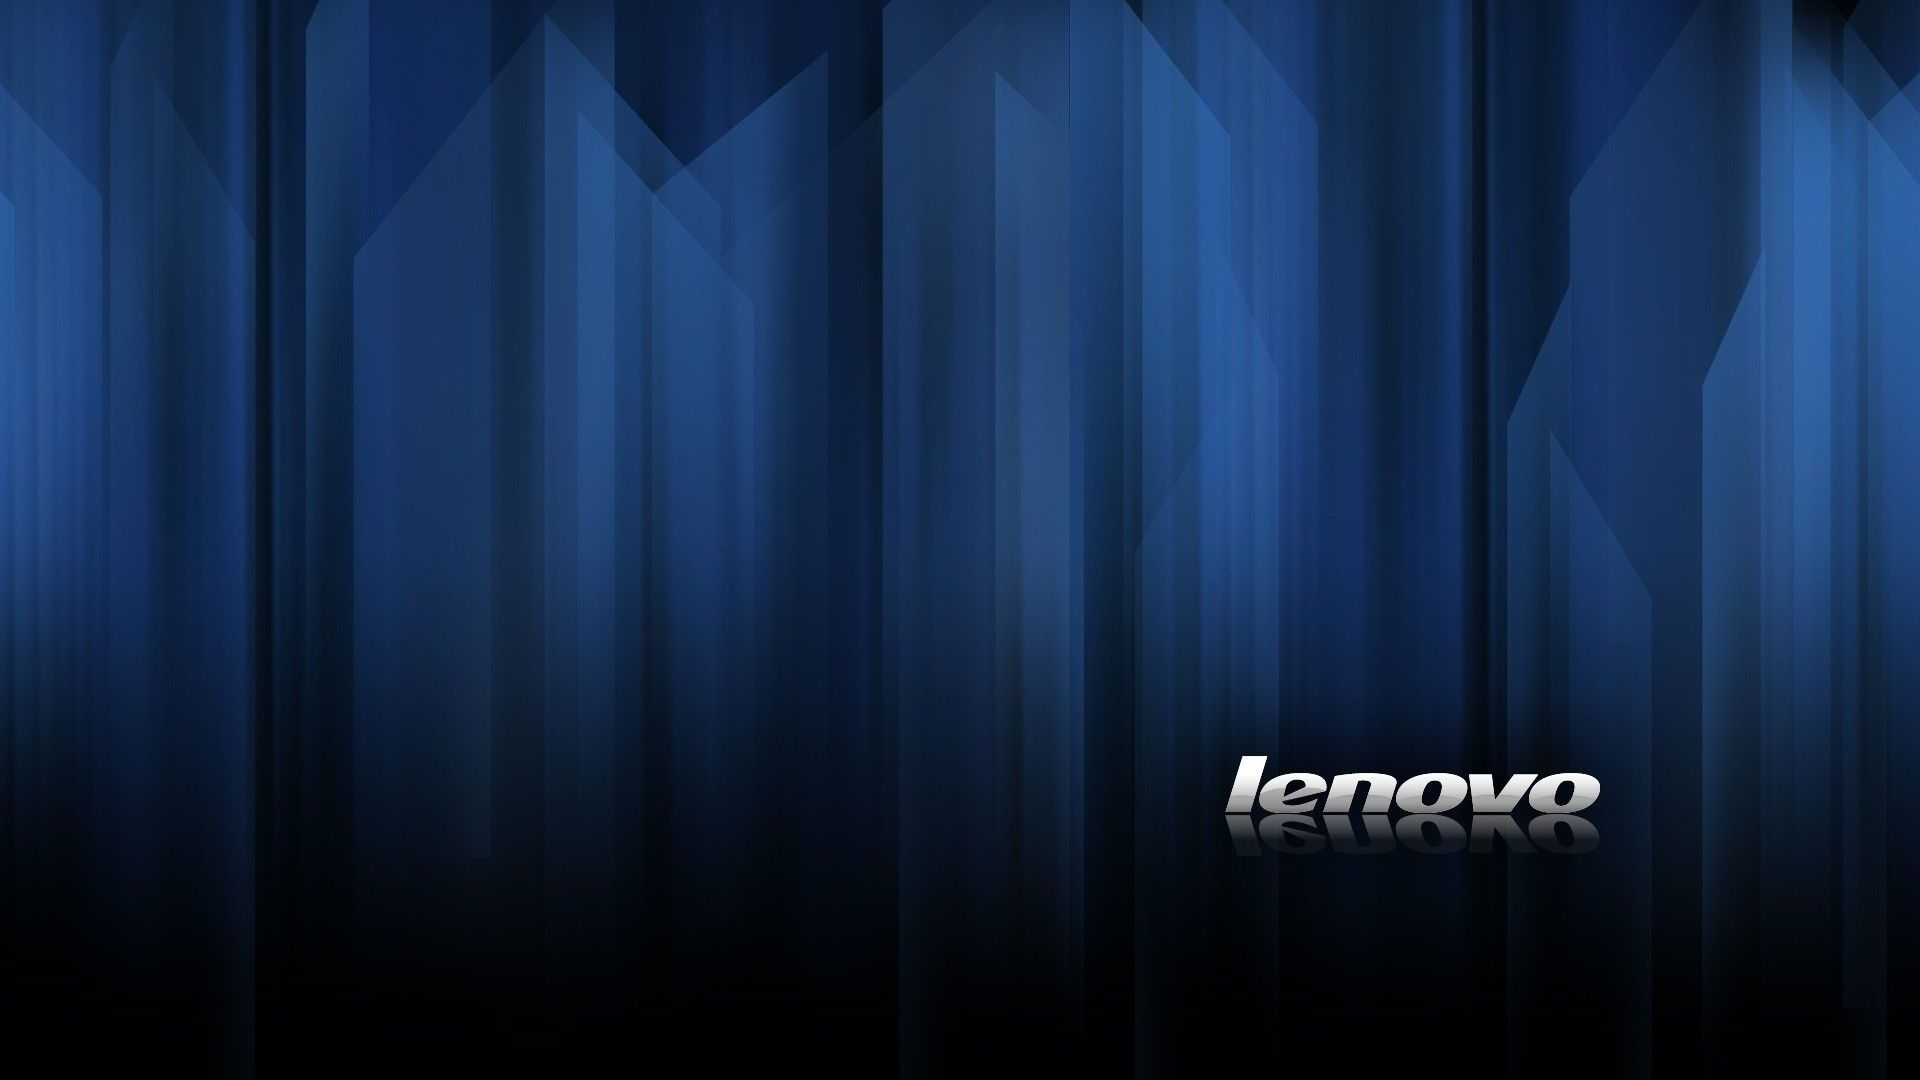 Lenovo, Computer, Company /lenovo Computer Company/. Lenovo Wallpaper, Laptop Wallpaper, Wallpaper Companies